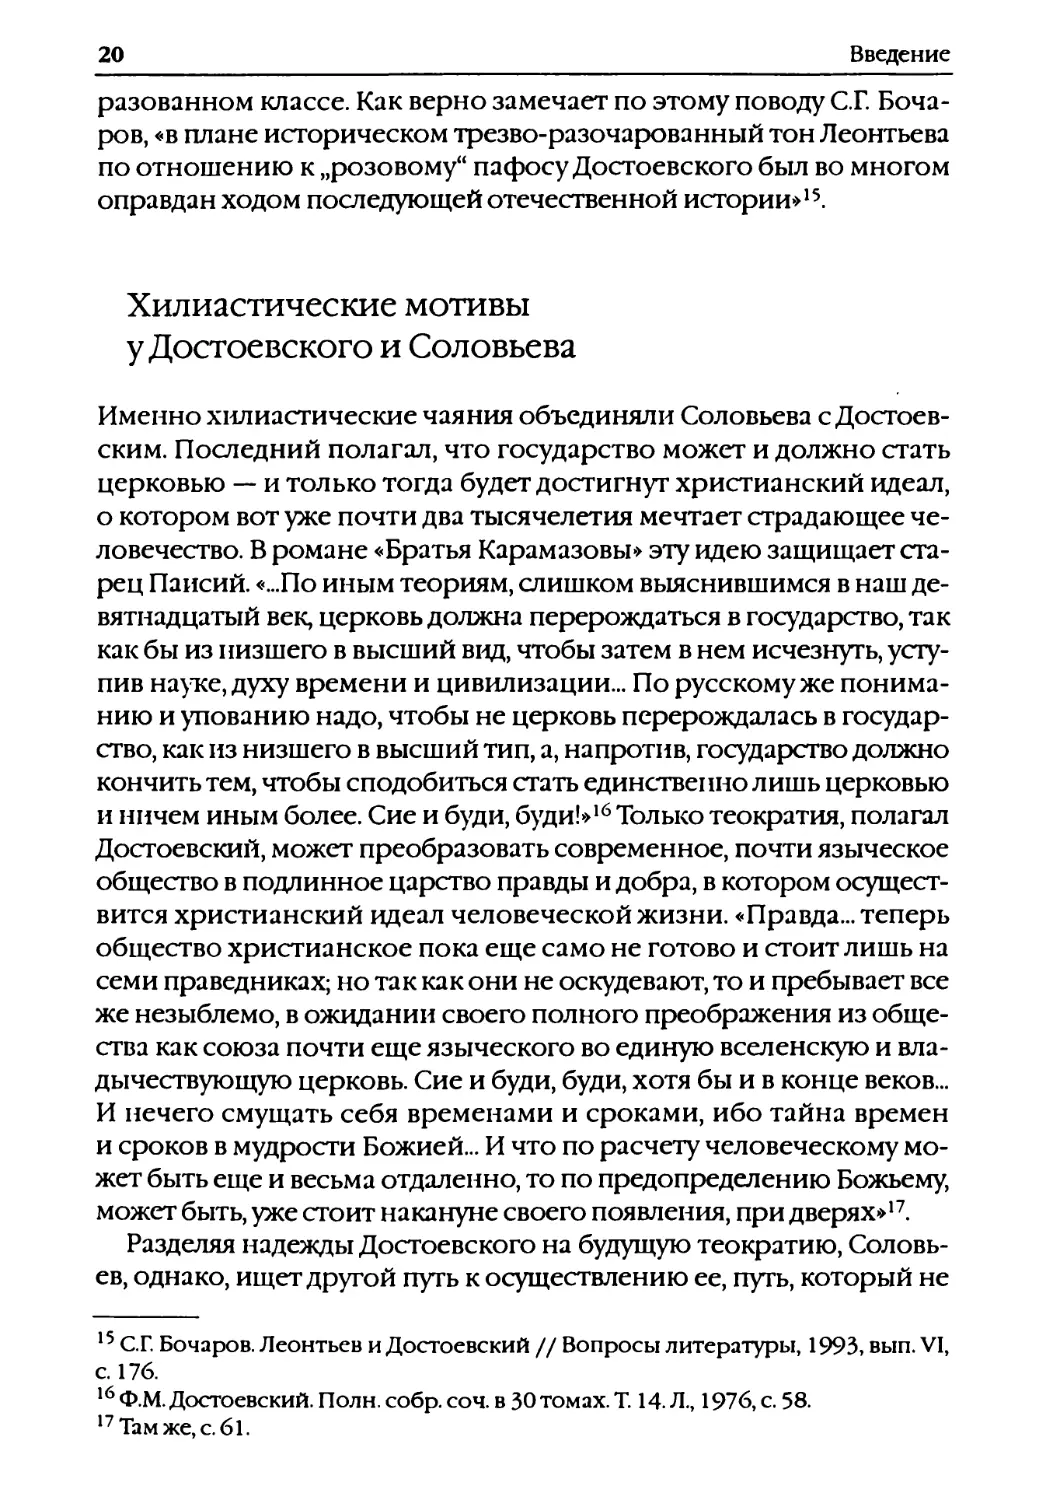 Хилиастические мотивы у Достоевского и Соловьева